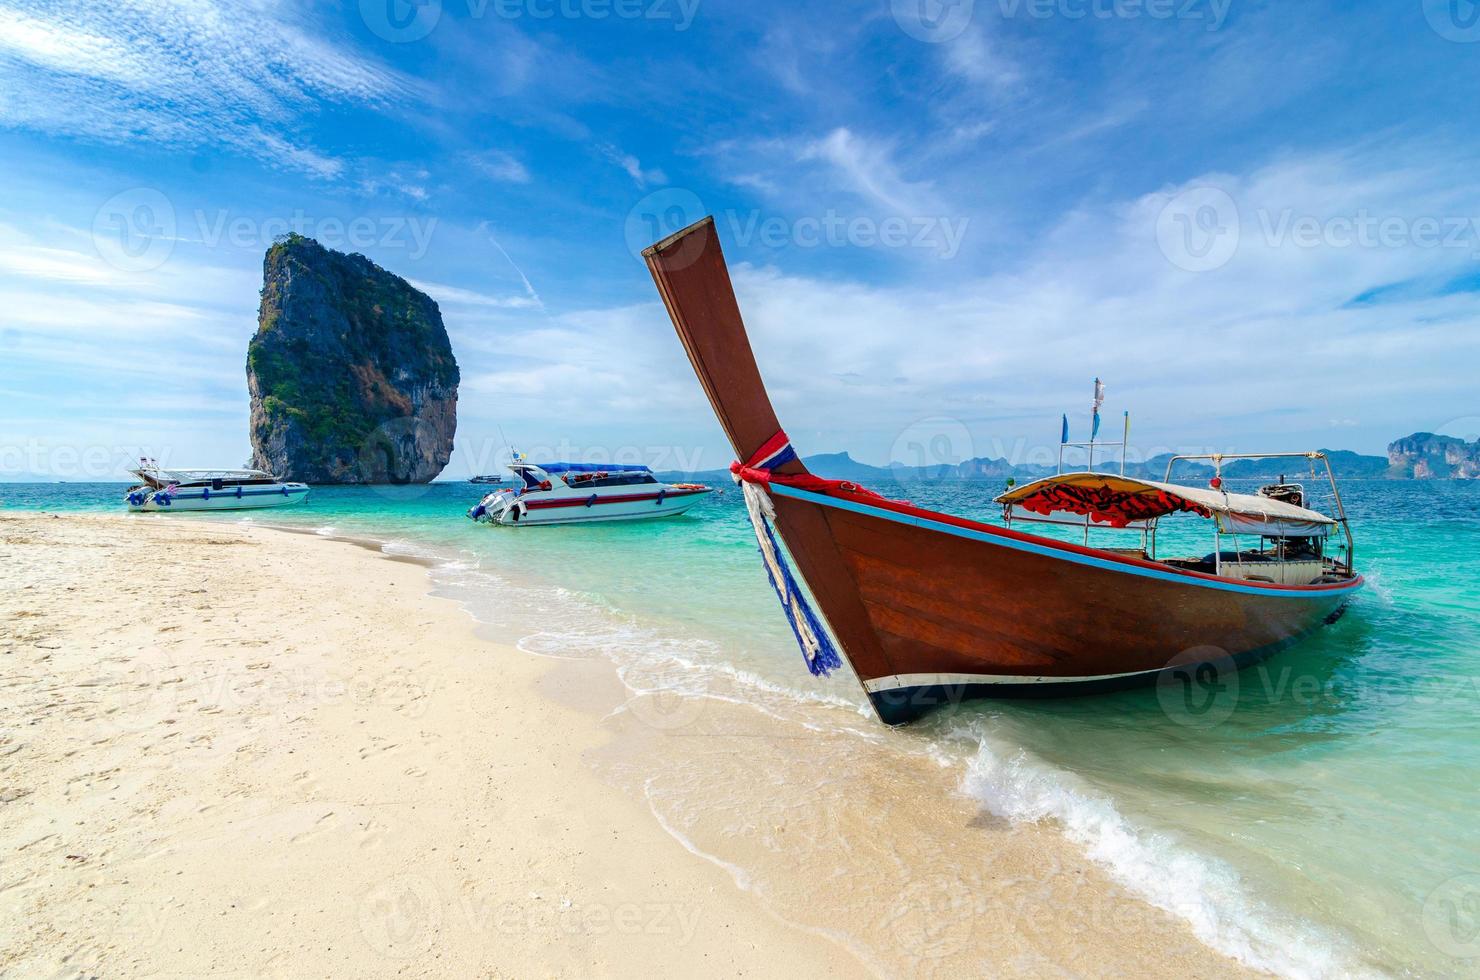 Poda Insel Holzboot auf dem Meer geparkt, weißer Strand an einem klaren blauen Himmel, blaues Meer foto